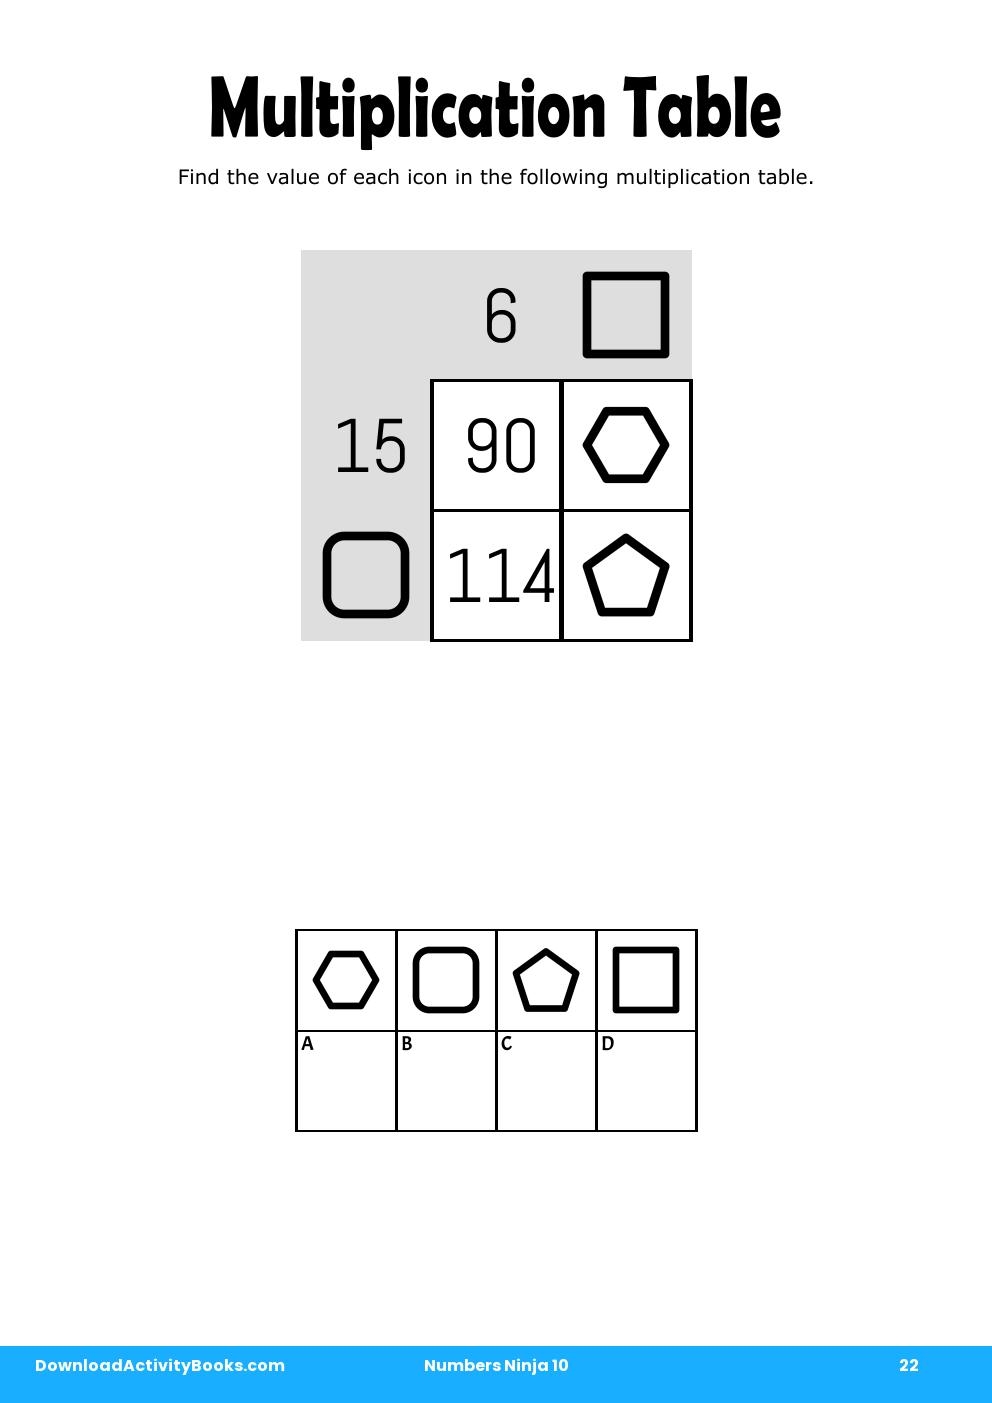 Multiplication Table in Numbers Ninja 10